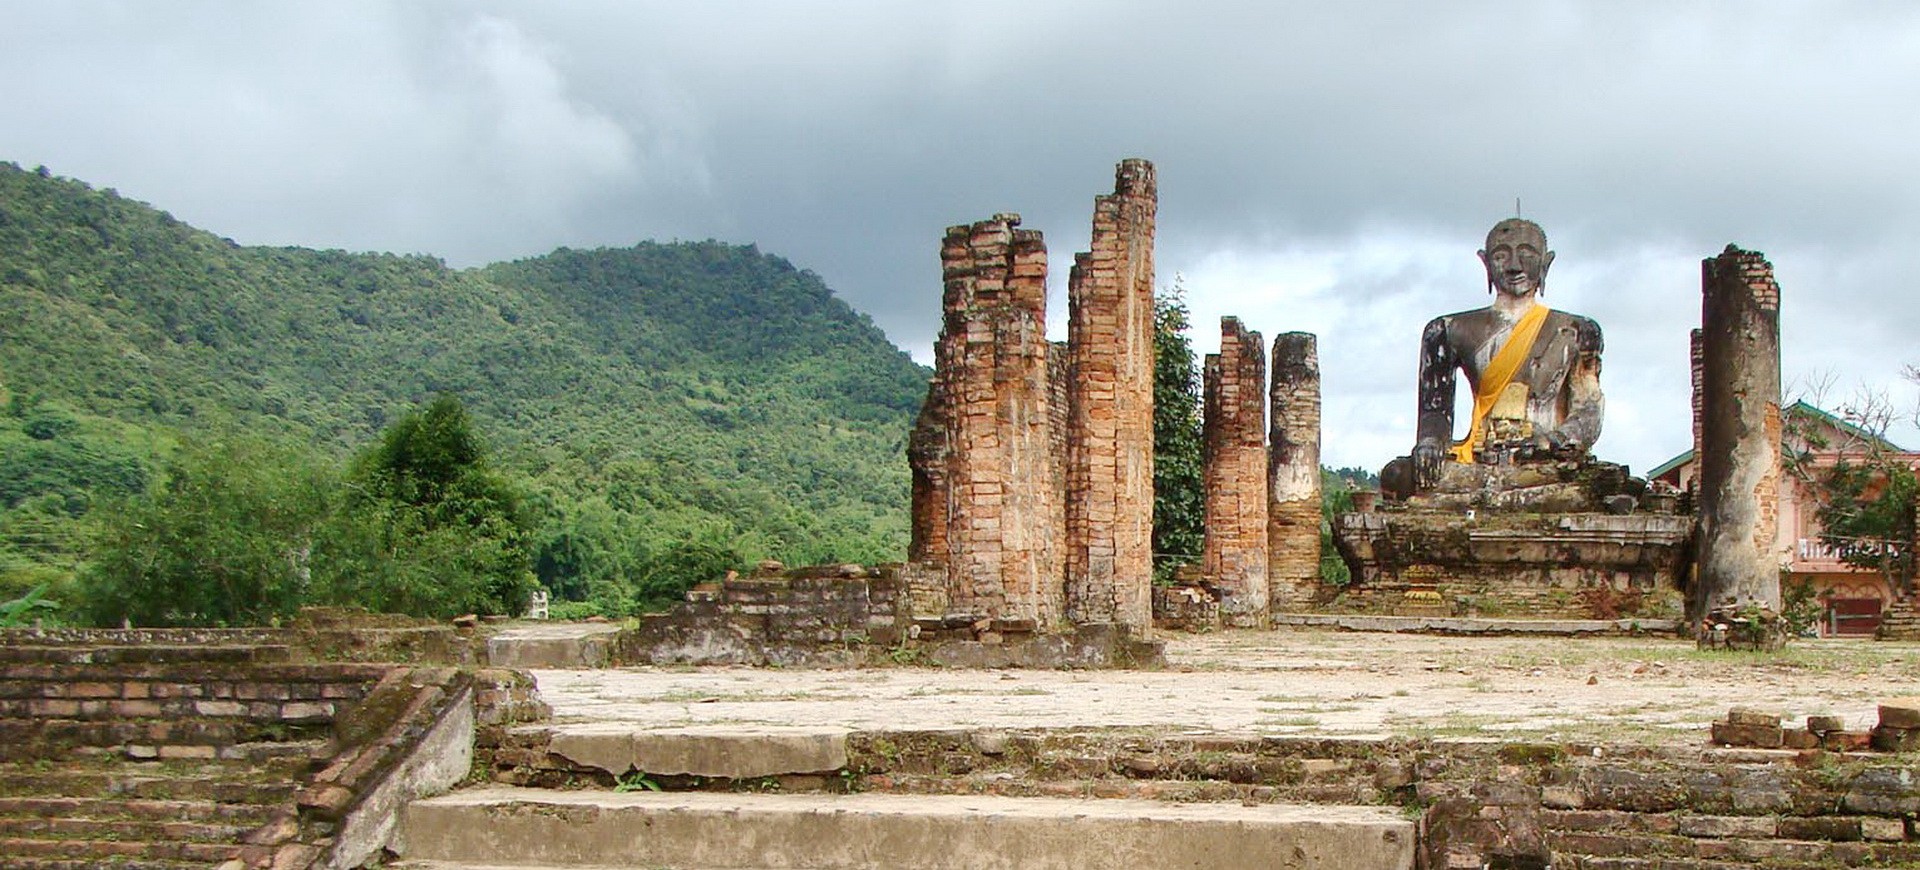 Laos Xiengkhuang Wat Phiawat